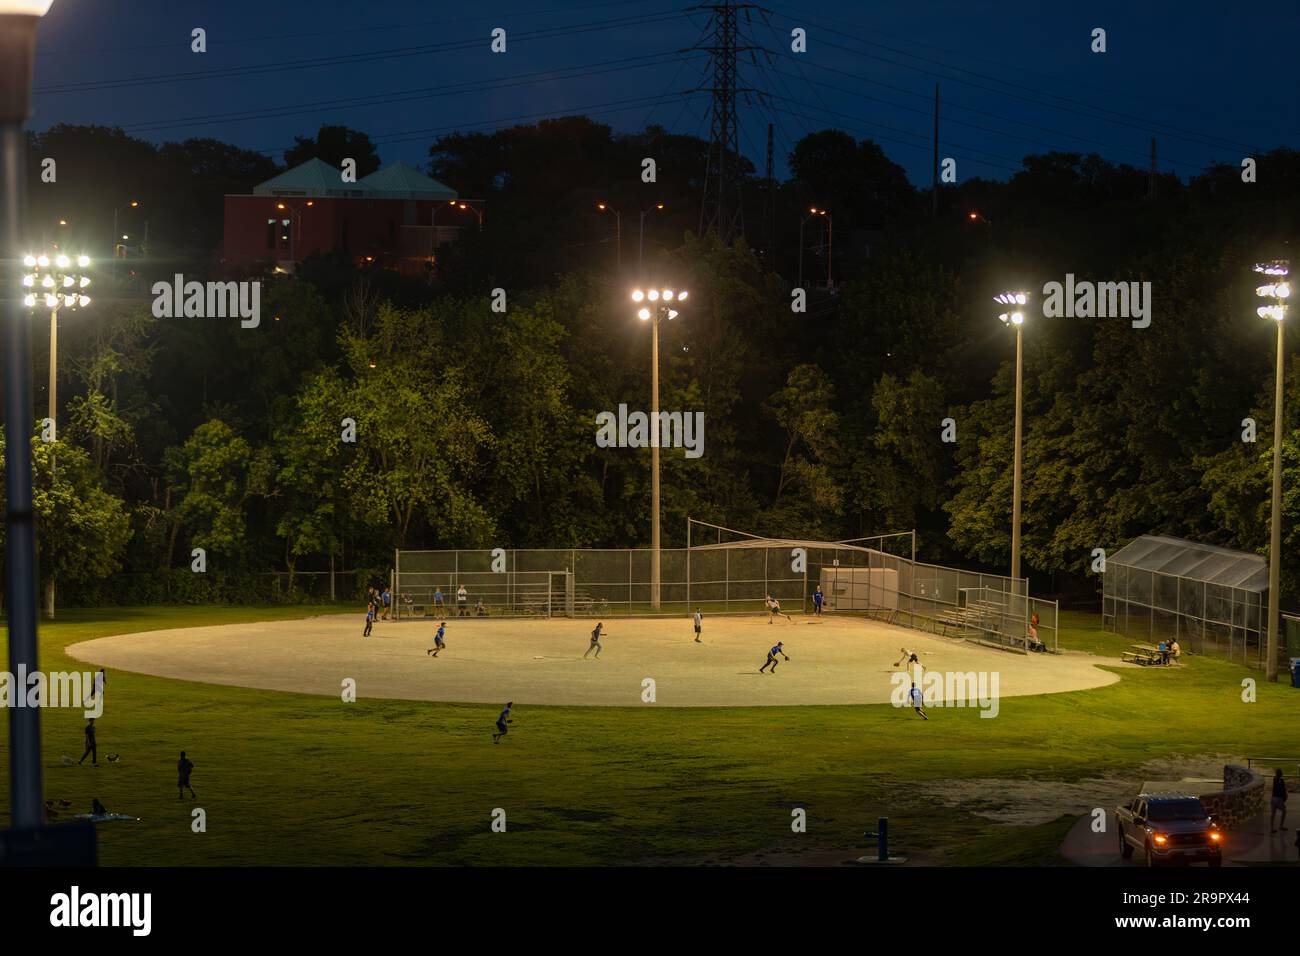 ¡Juega a la pelota! Un partido de béisbol de la liga de recreación se juega bajo las luces en un gran parque en Toronto en una buena noche de verano Foto de stock